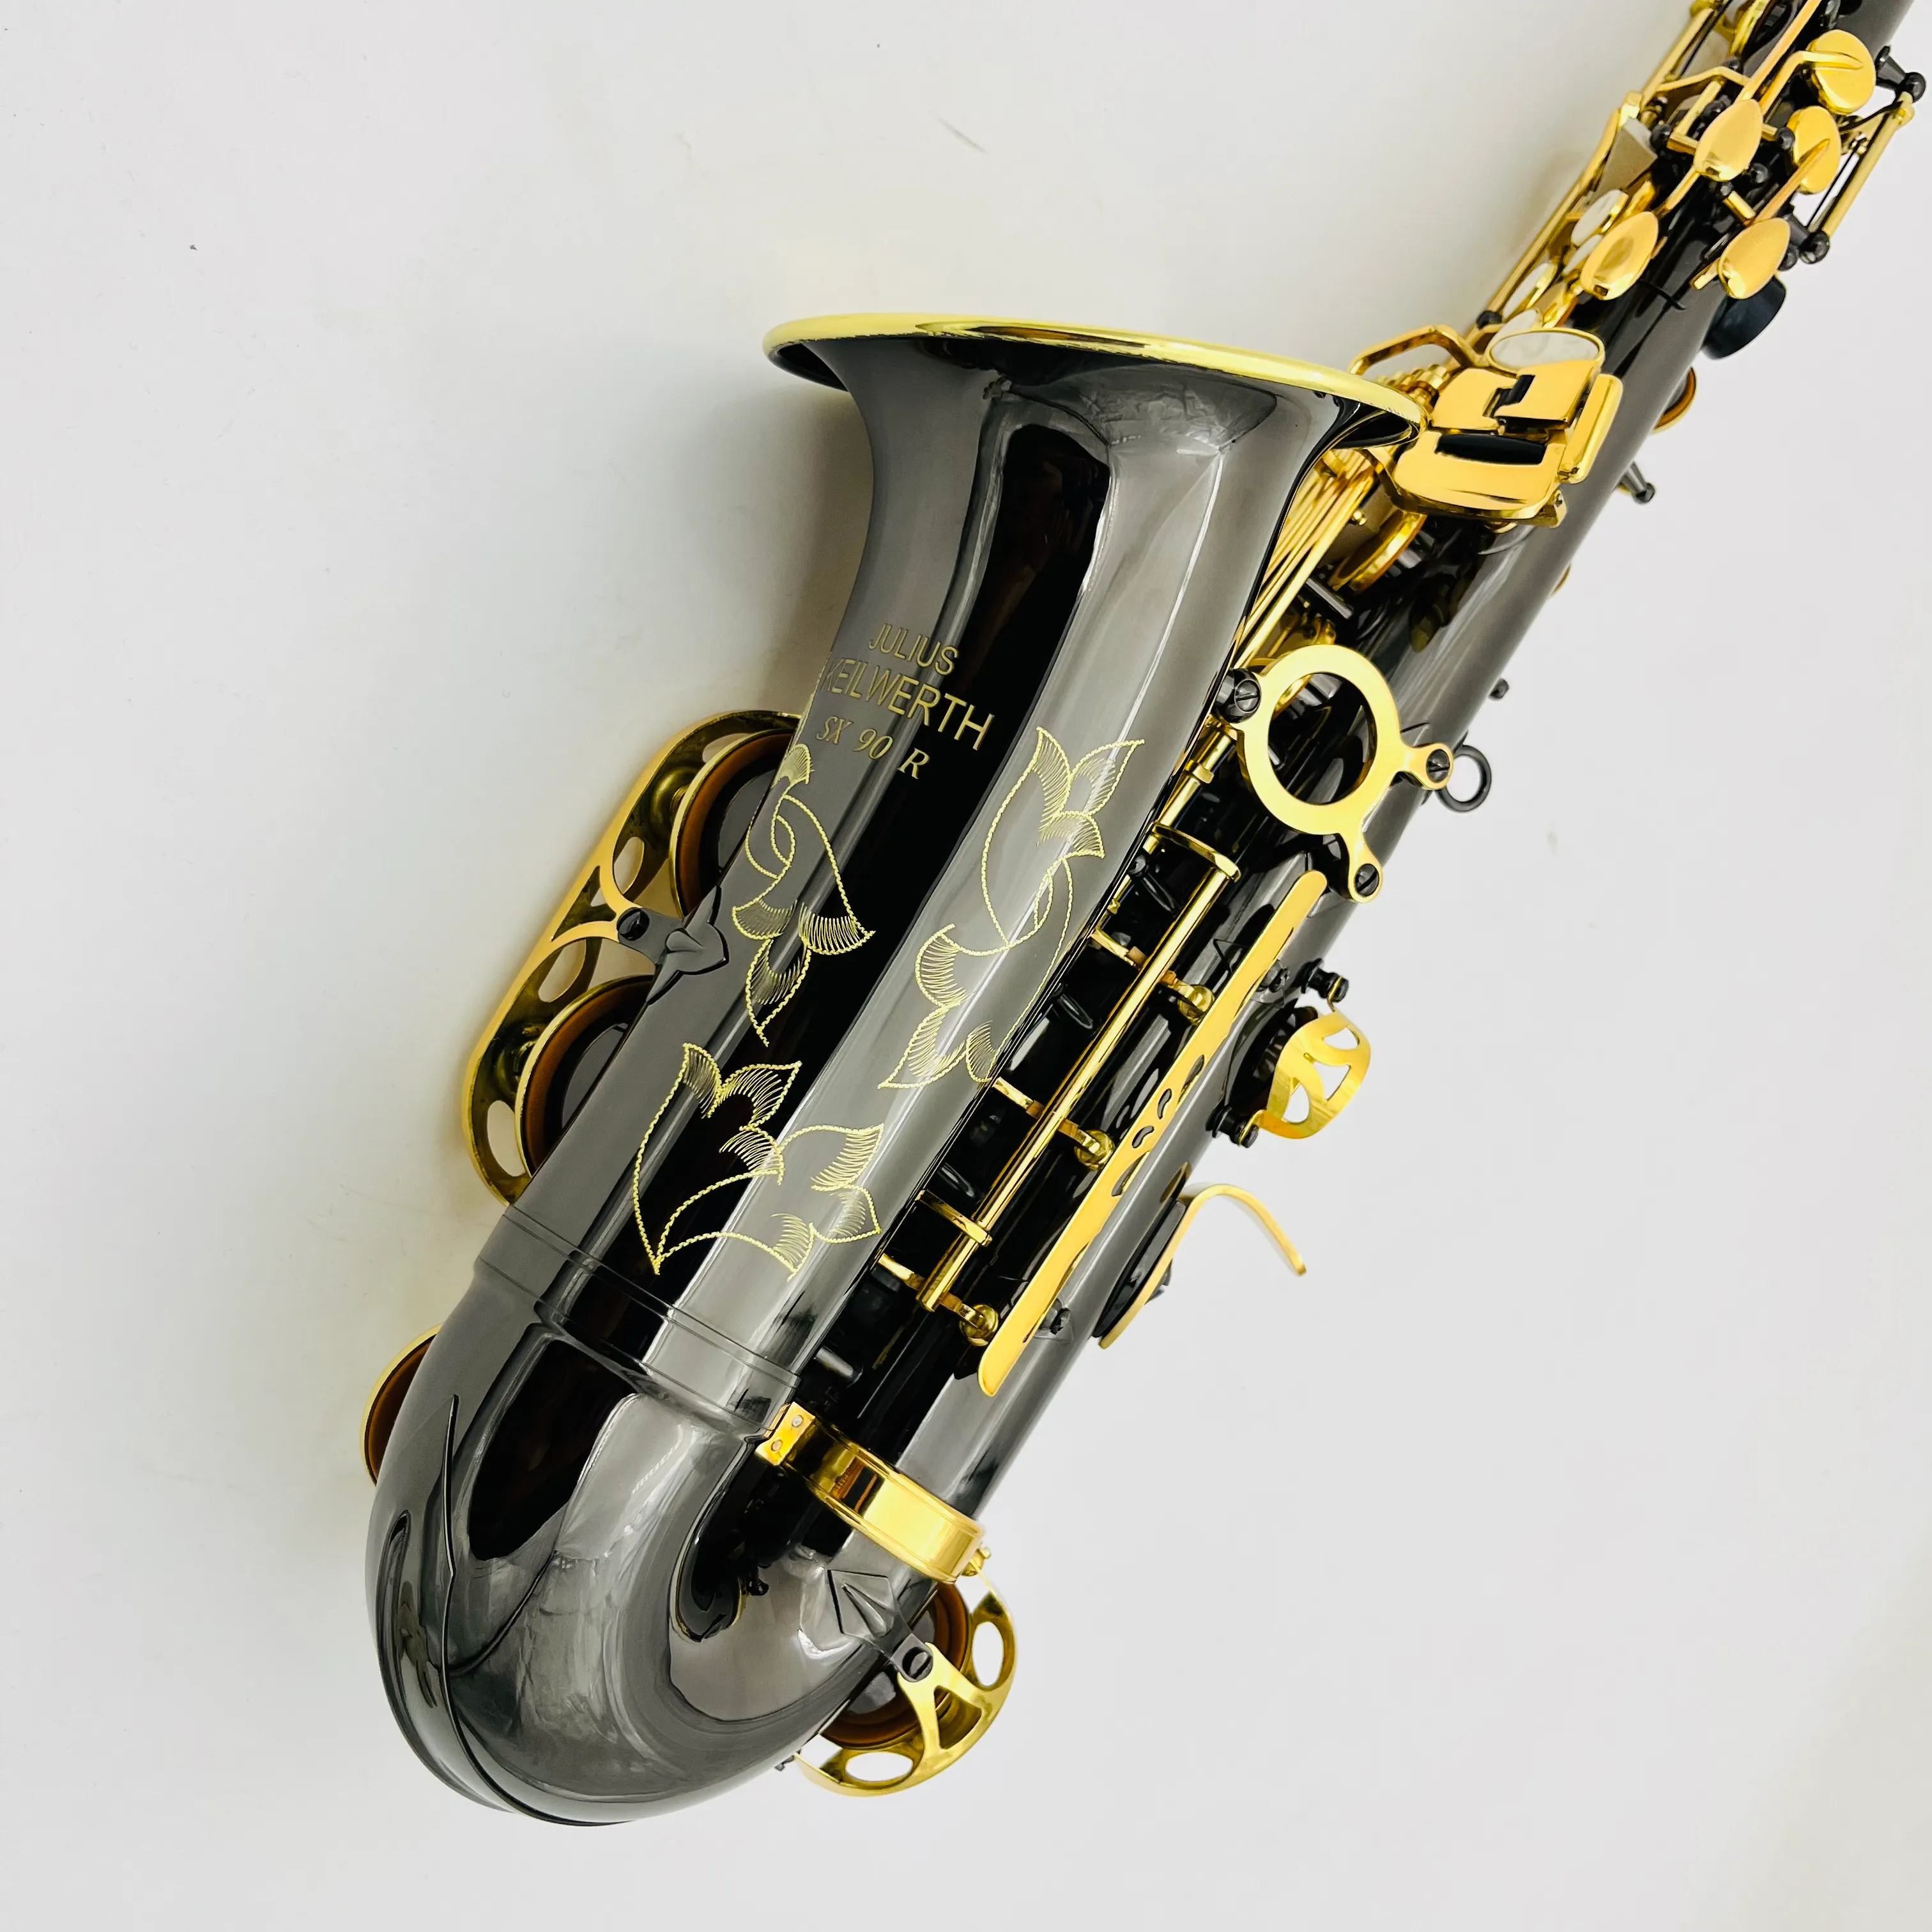 Professionelles Altsaxophon Keilwerth SX90R Messing schwarz plattiert Nickel Gold Eb Tune Sax Holz Musikinstrument mit Koffer